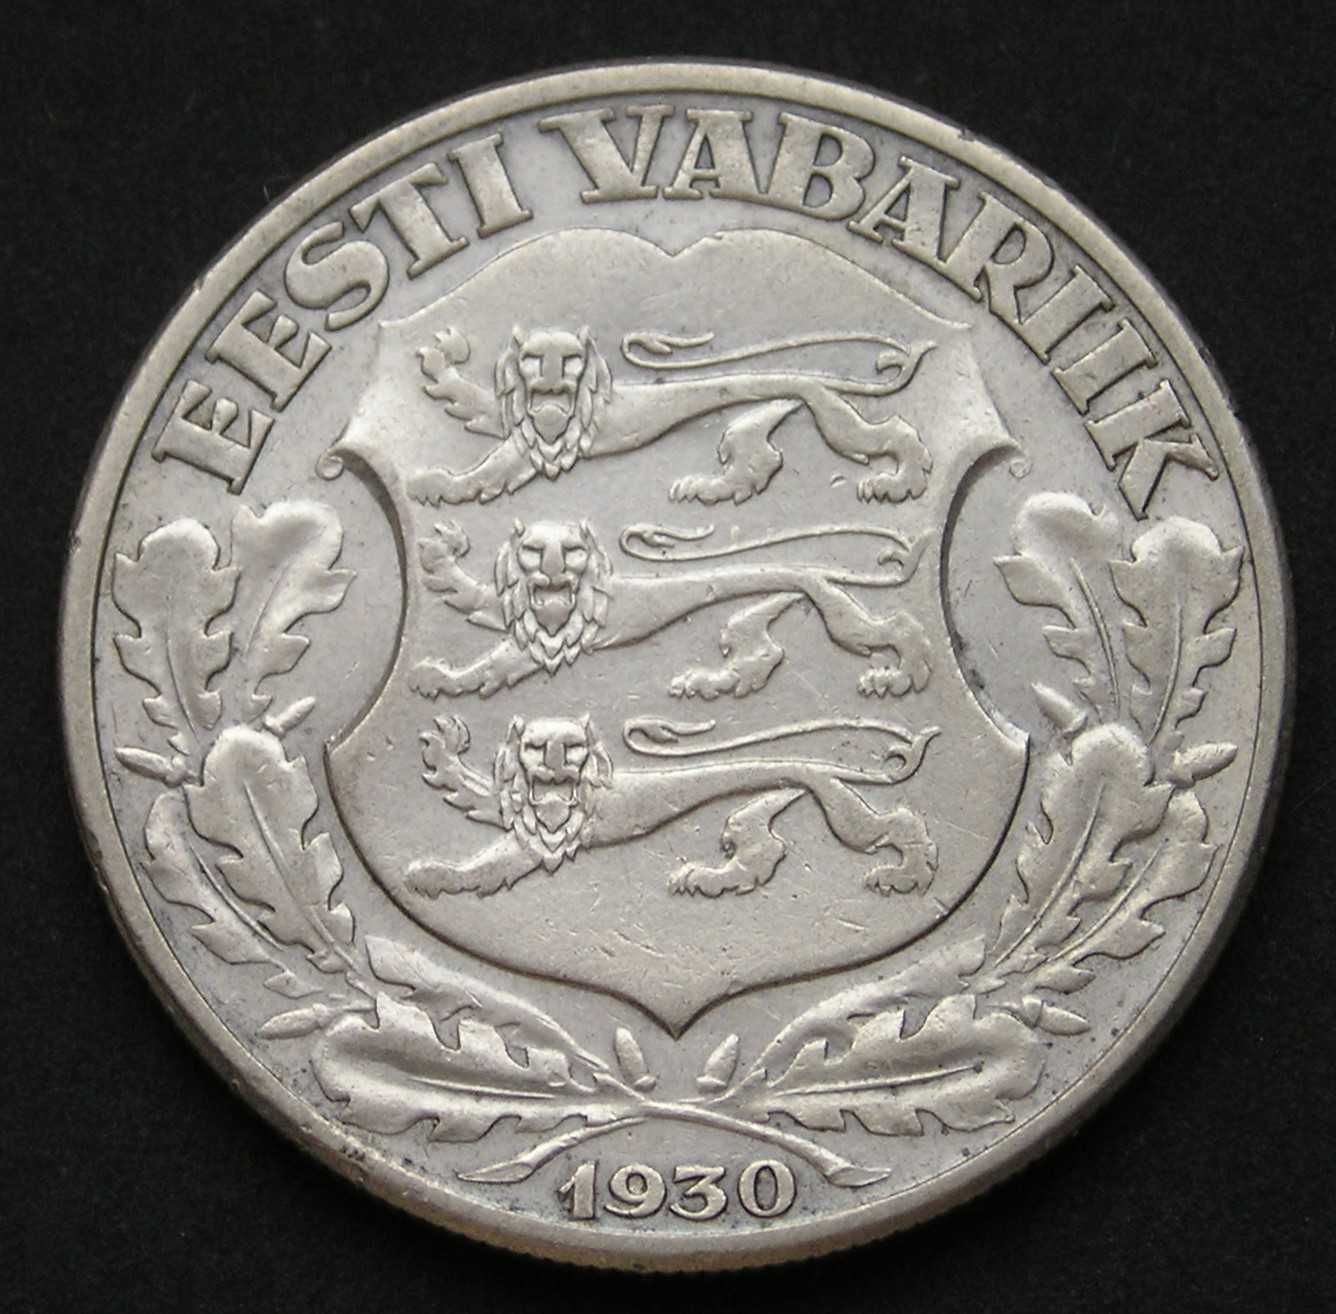 Estonia 2 korony 1930 - srebro